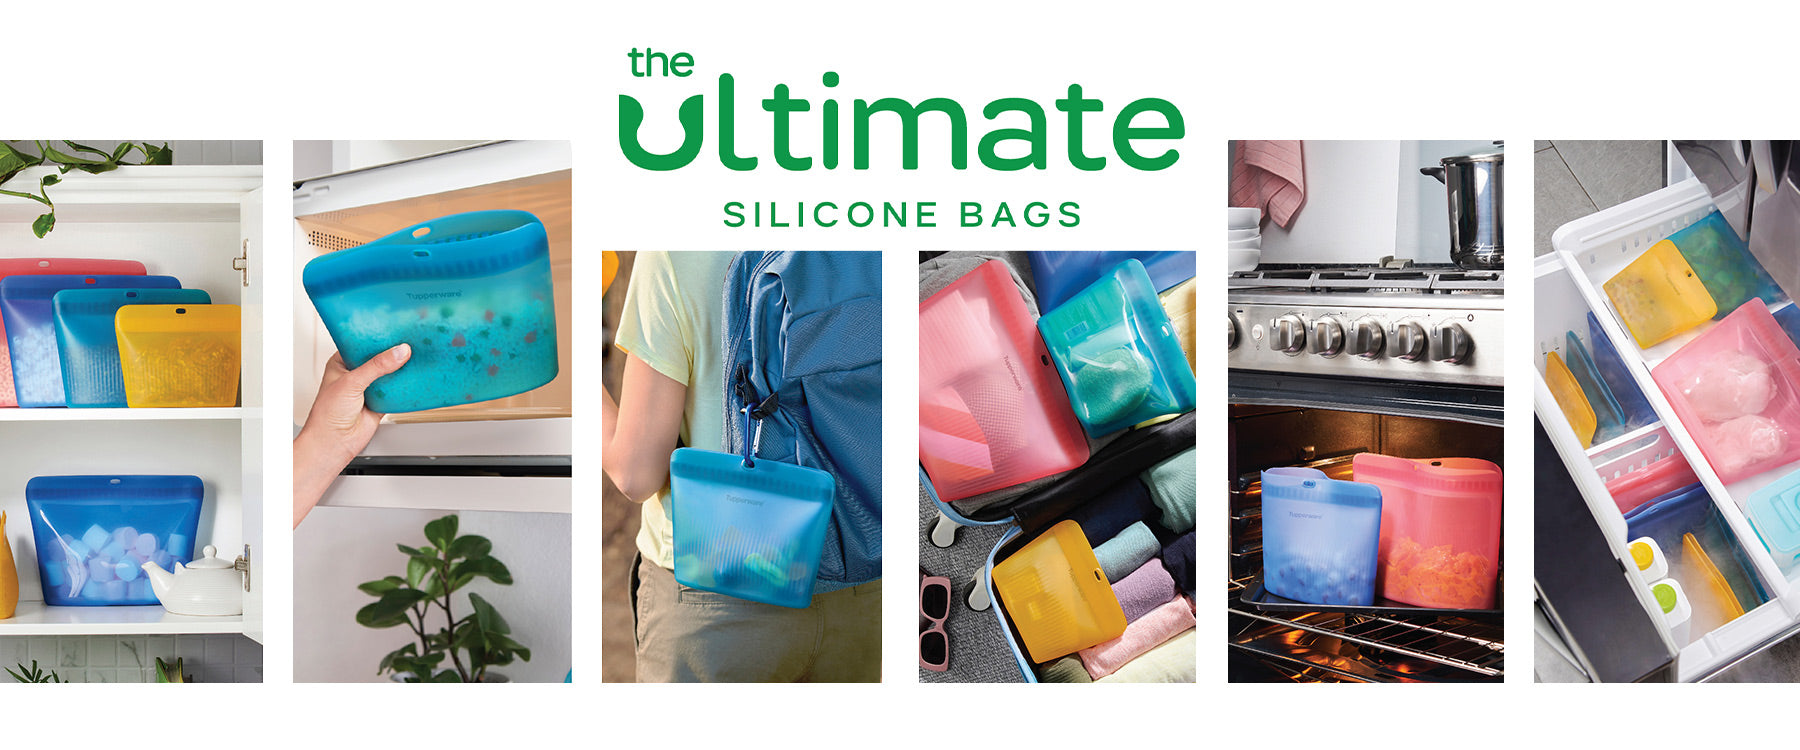 Las bolsas de silicona Ultimate están llenas de posibilidades